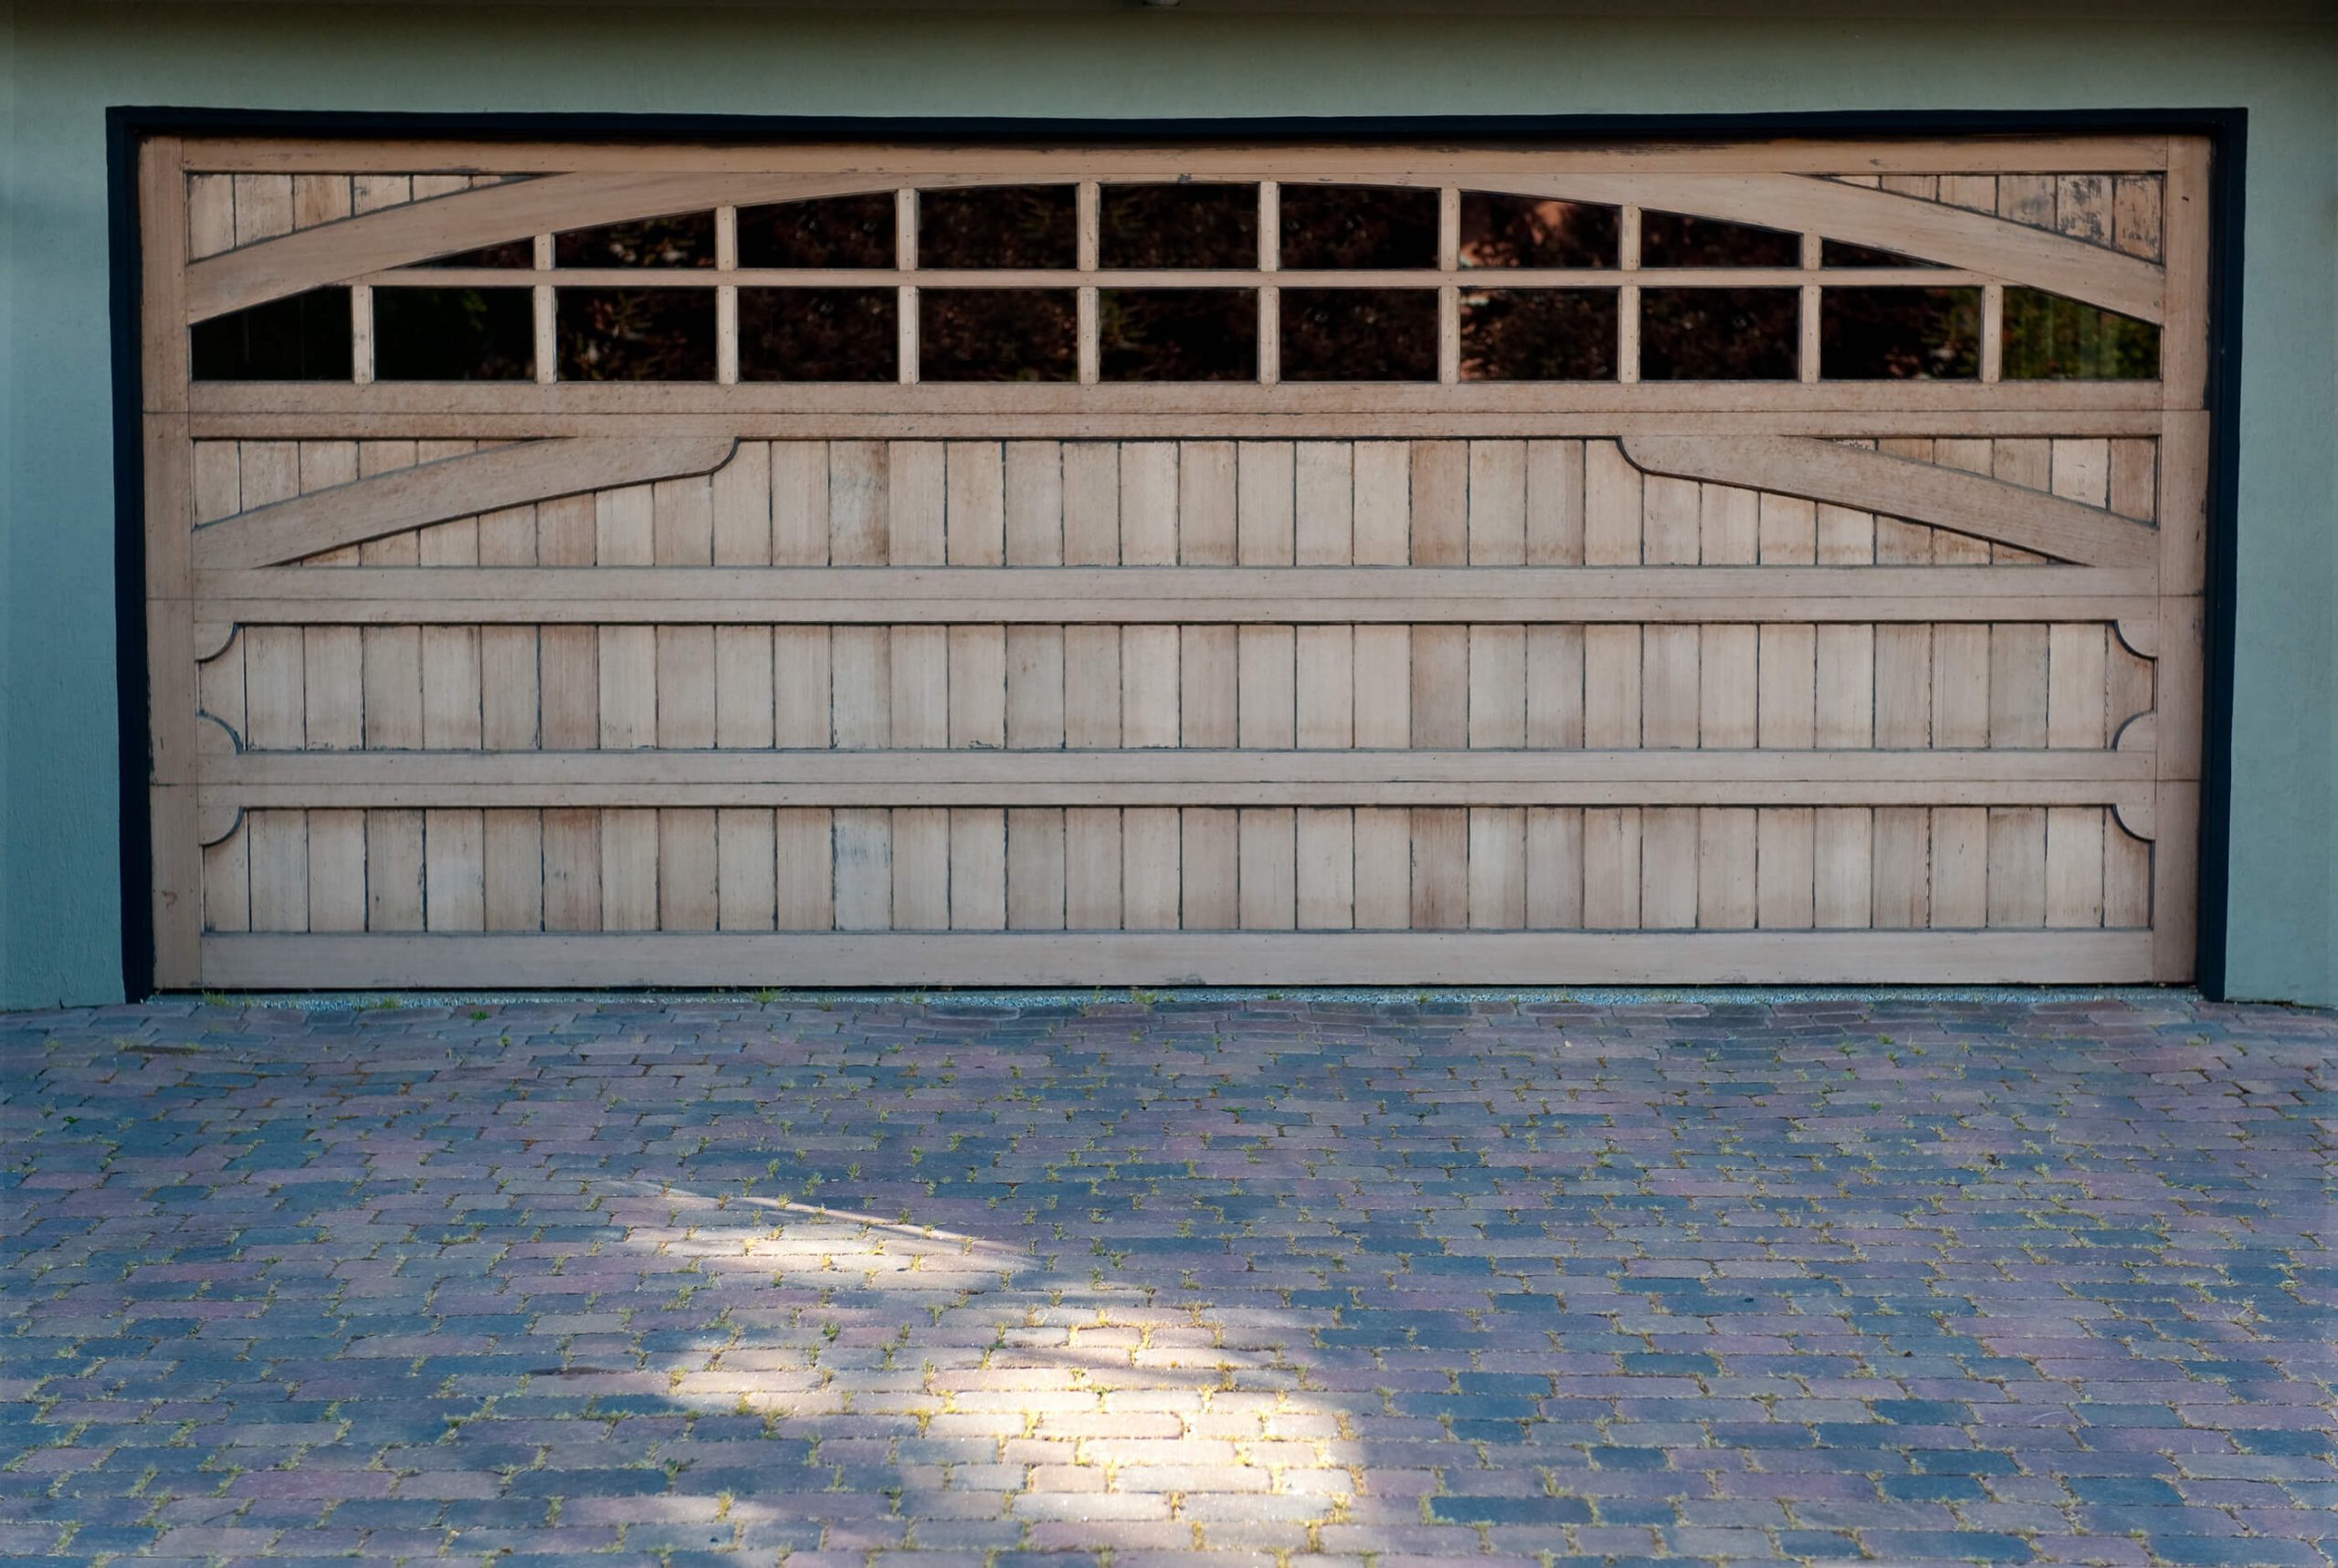 A Guide to Garage Door Windows | 𝗣𝗿𝗲𝗰𝗶𝘀𝗶𝗼𝗻 𝗚𝗮𝗿𝗮𝗴𝗲 𝗗𝗼𝗼𝗿𝘀